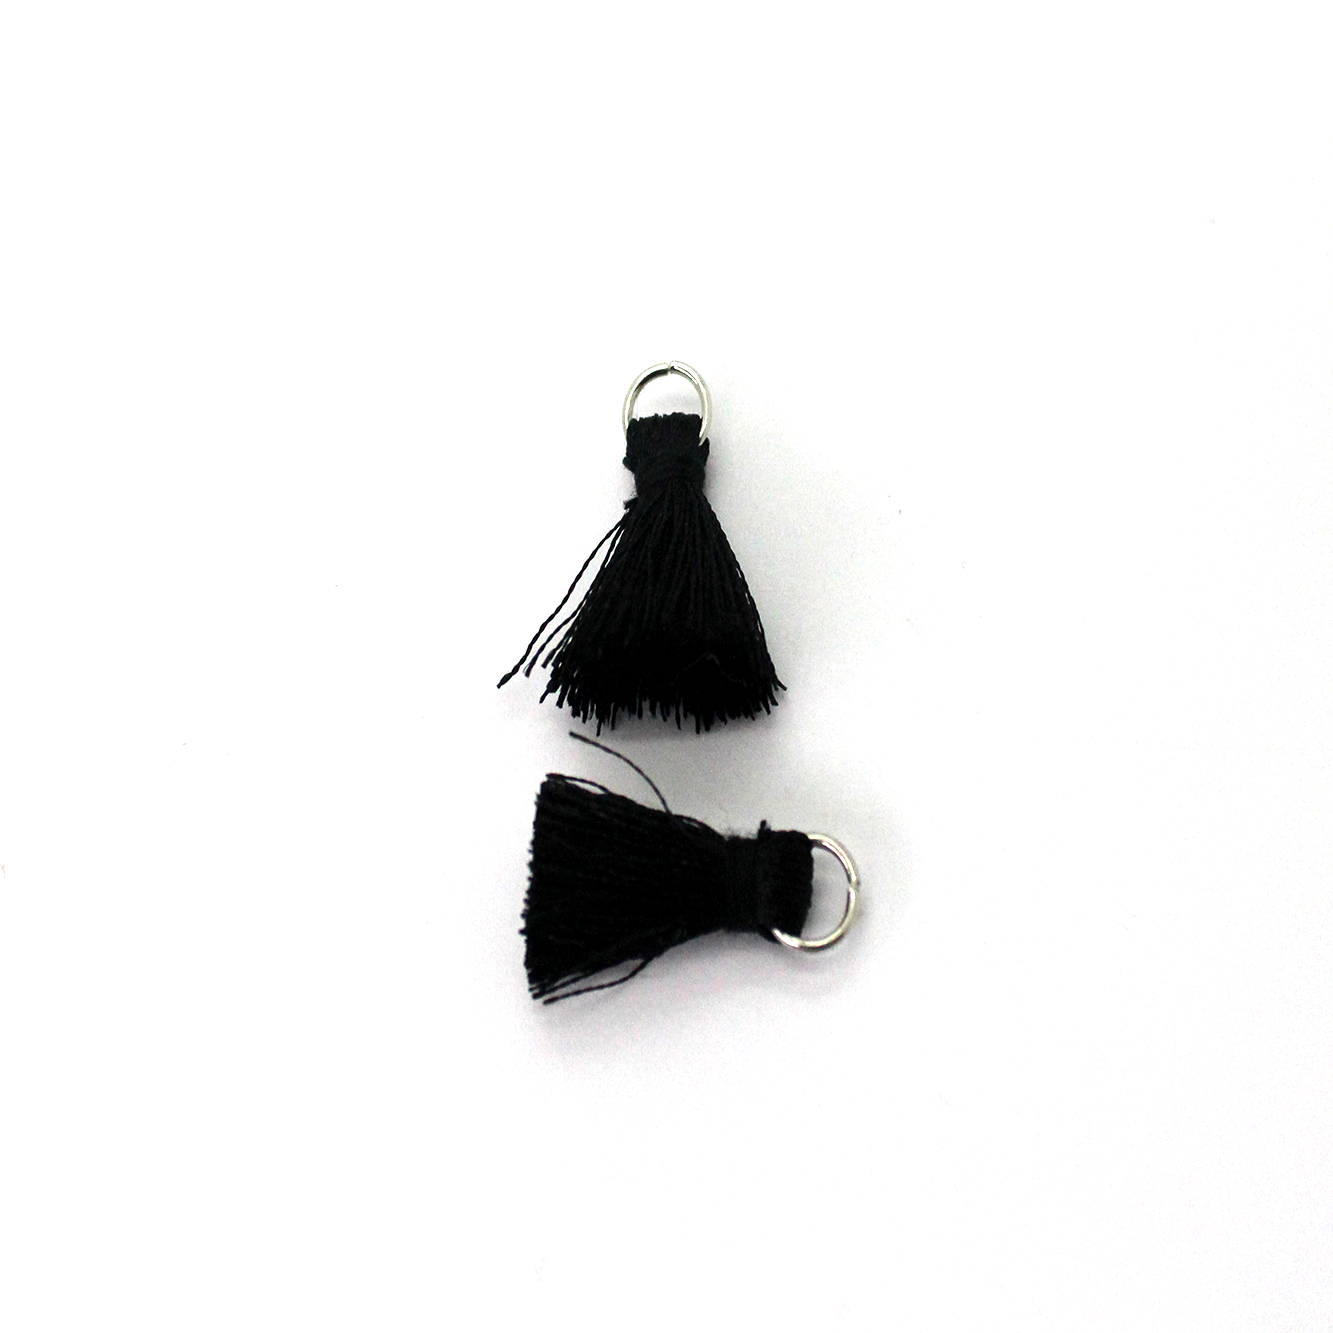 Tassels, Petit Tassel with Ring, Black Silk Thread, 1 inch, 4pcs